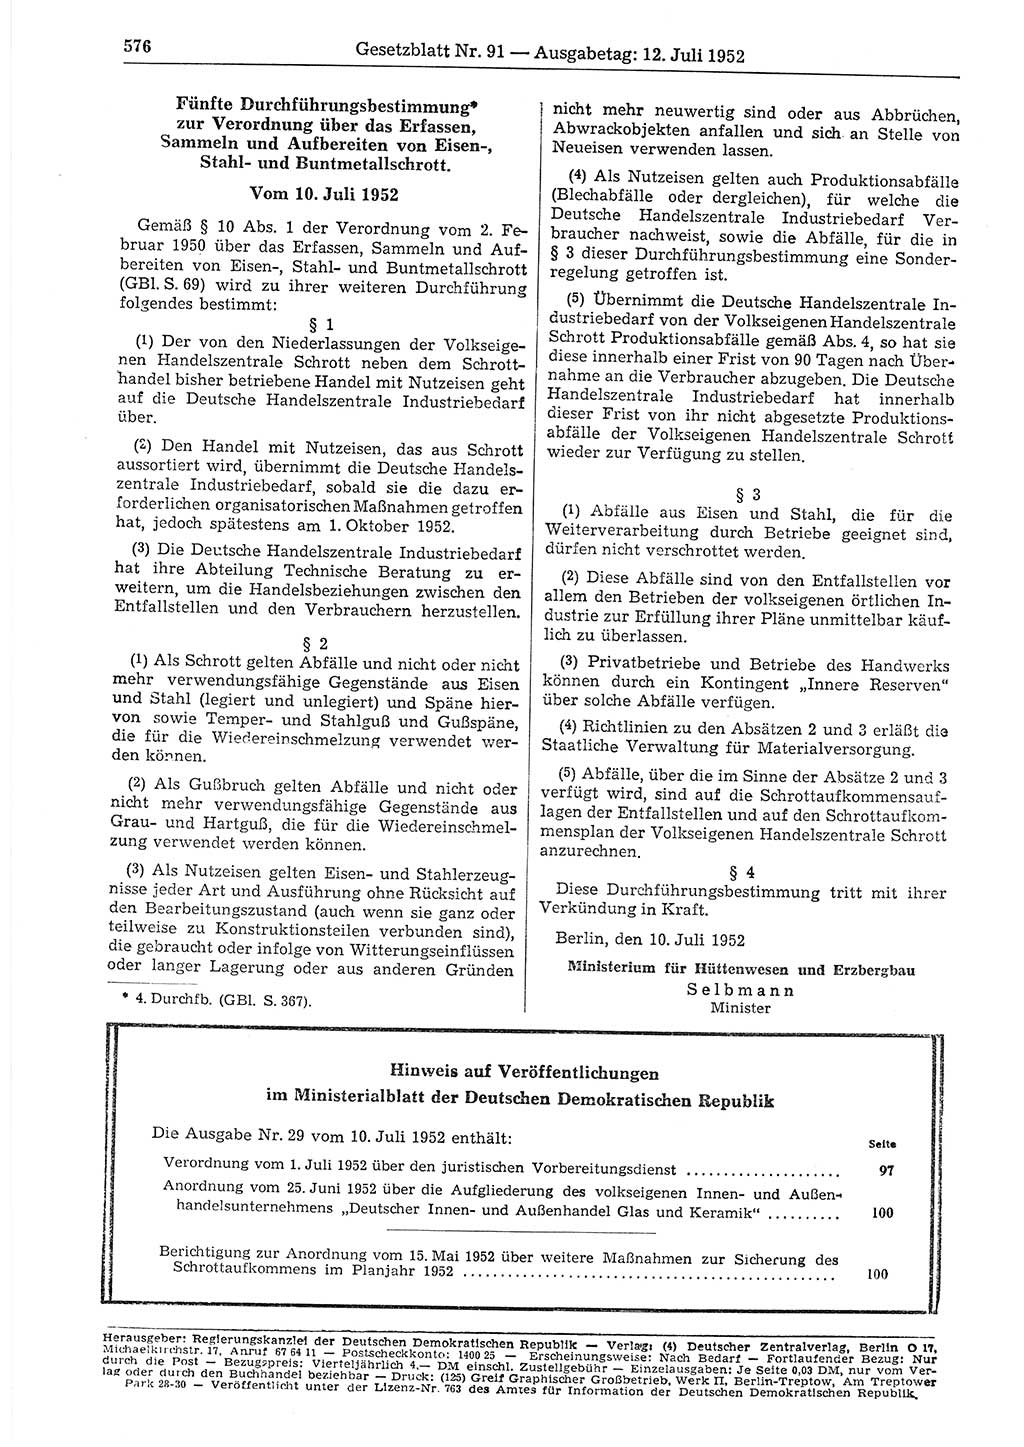 Gesetzblatt (GBl.) der Deutschen Demokratischen Republik (DDR) 1952, Seite 576 (GBl. DDR 1952, S. 576)